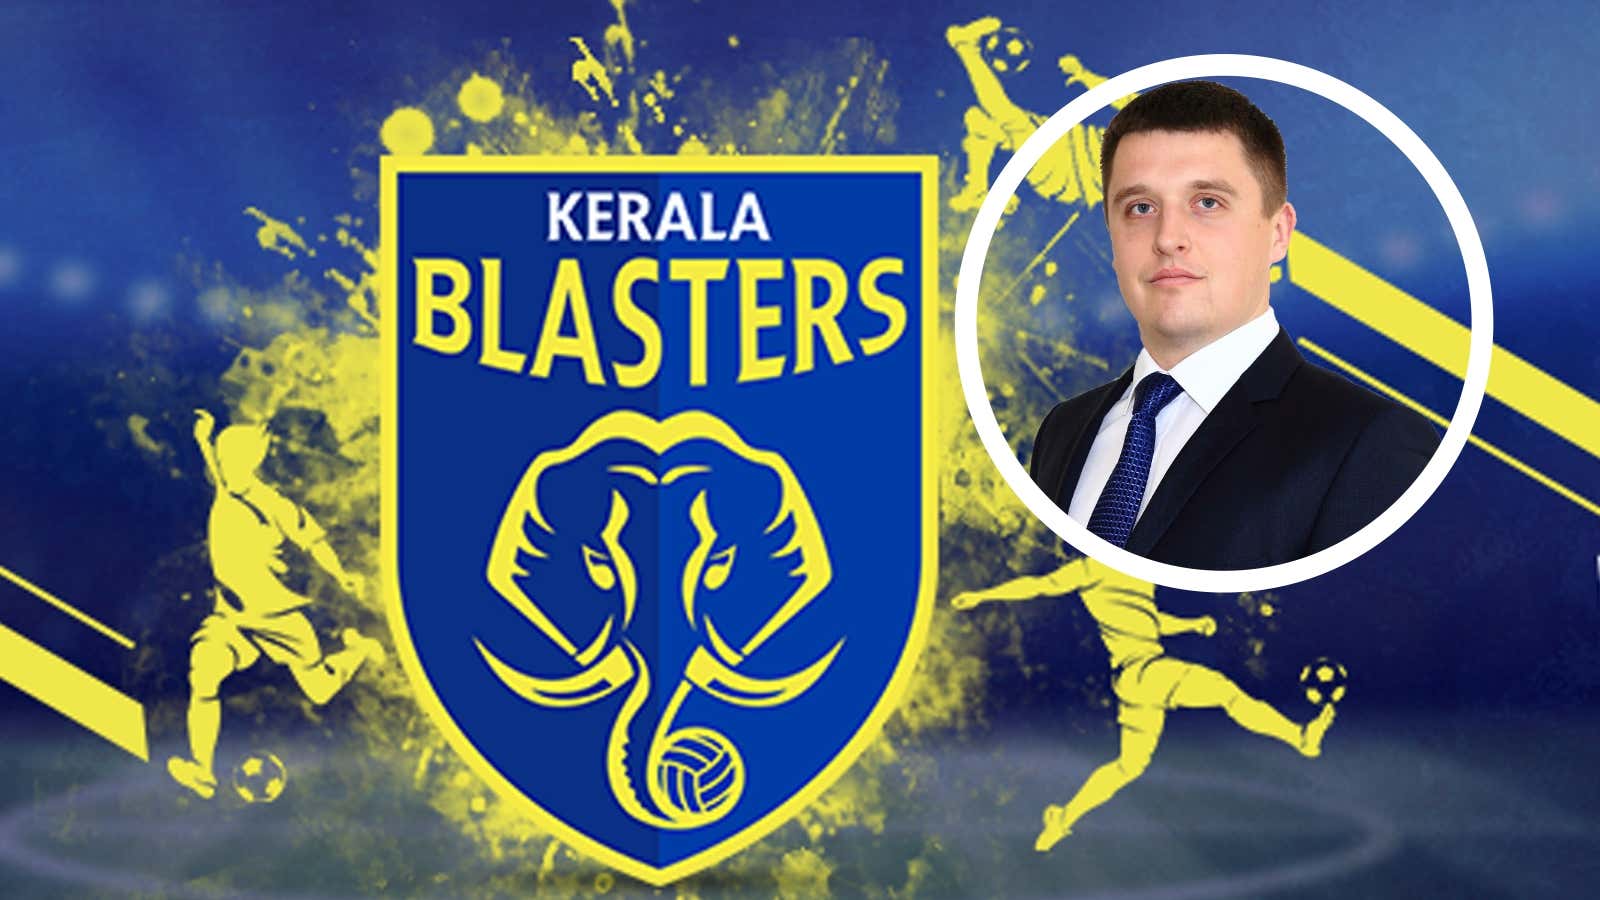 Kerala Blasters logo with Karolis Skinkys Overlay